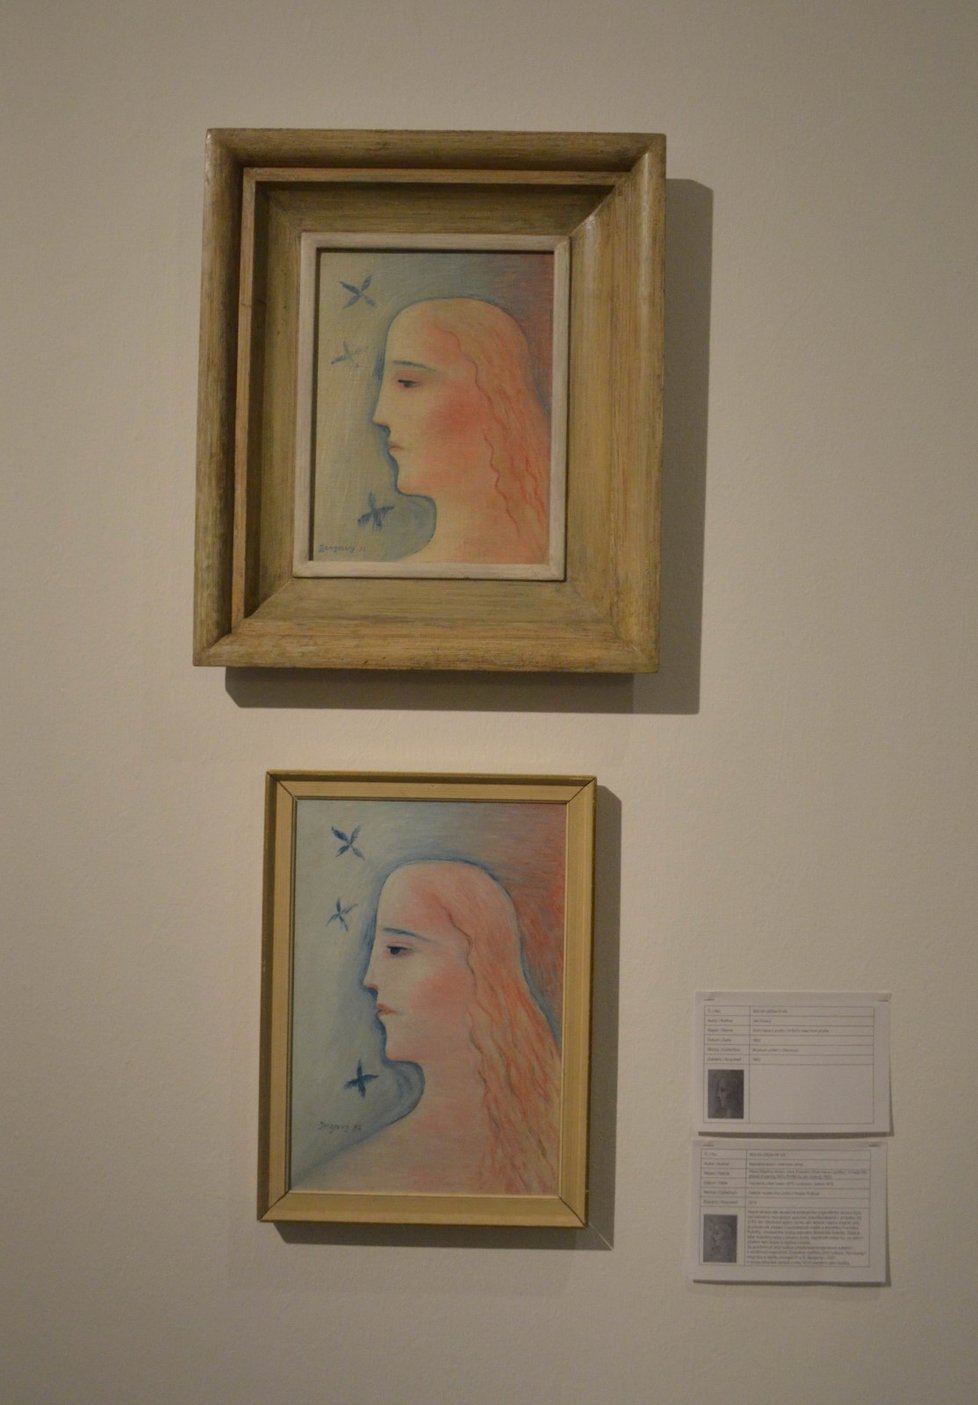 Návštěvníci unikátní výstavy dostali možnost prohlédnout si padělky uměleckých děl a porovnat je s originály.